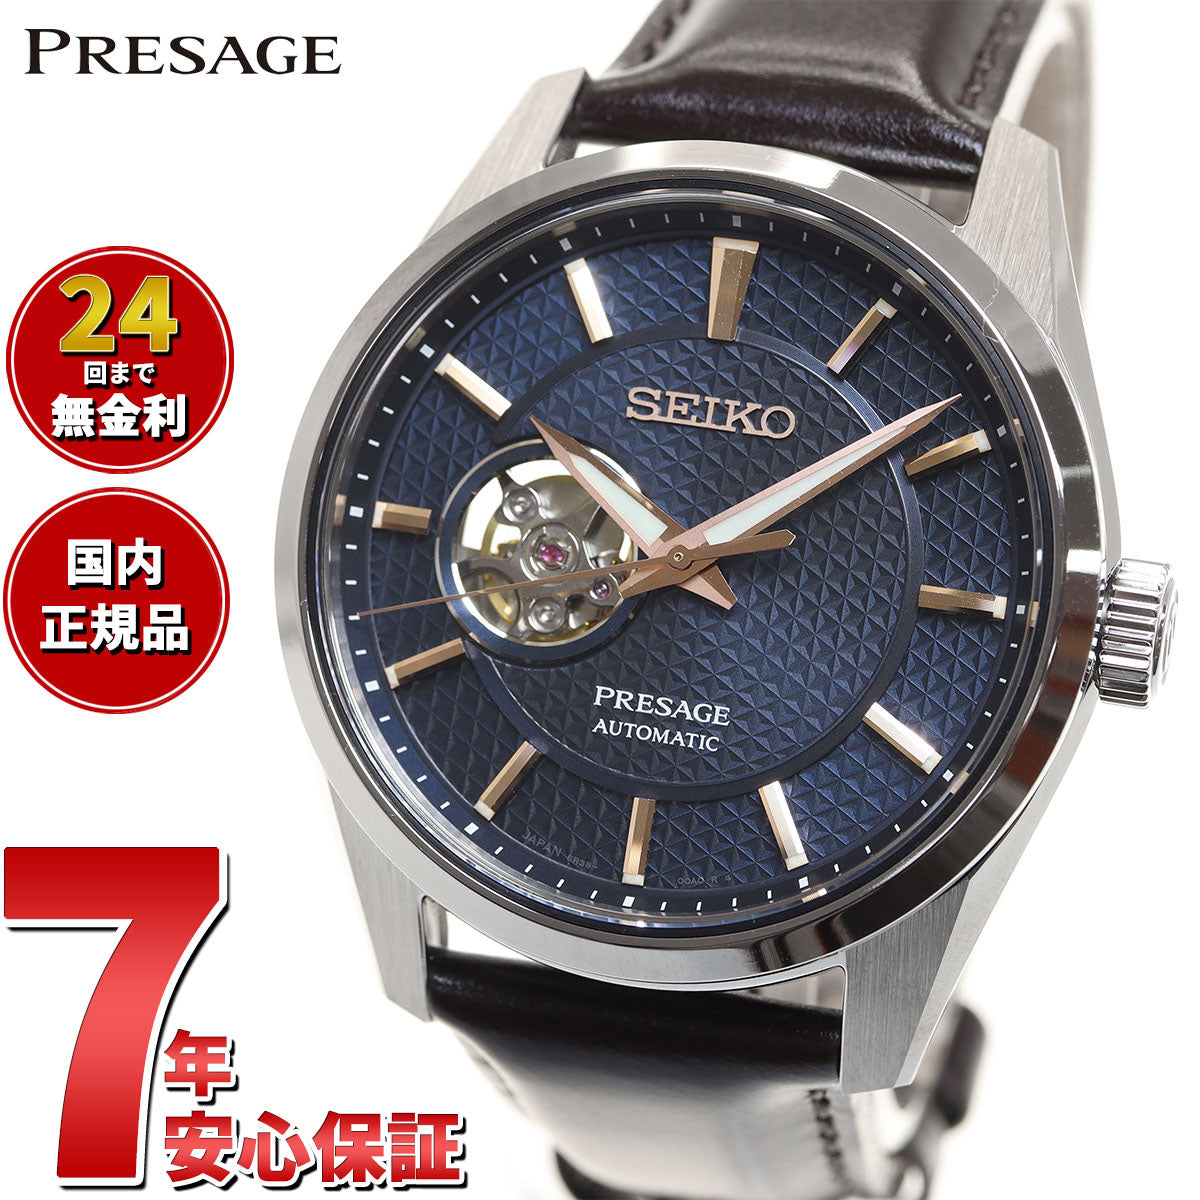 セイコー SEIKO 腕時計 メンズ SARX091 セイコー メカニカル プレザージュ プレステージライン シャープ エッジド シリーズ Prestige line Sharp Edged Series 自動巻き（6R35/手巻き付） ブラックxブラック アナログ表示